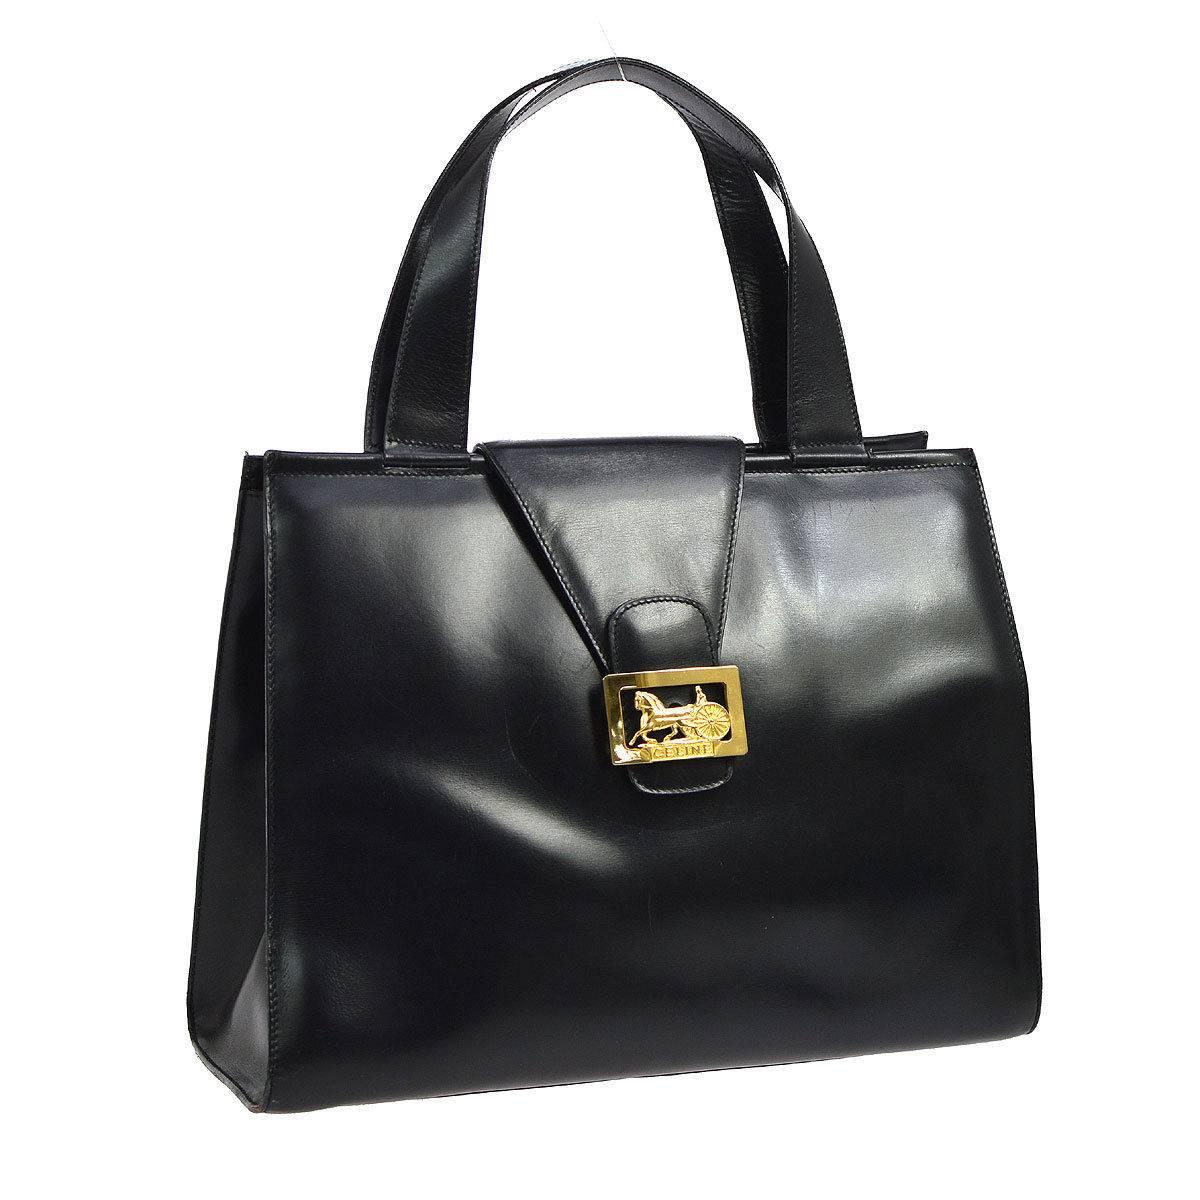 Celine Black Leather Gold Emblem Evening Kelly Style Top Handle Satchel Tote Bag